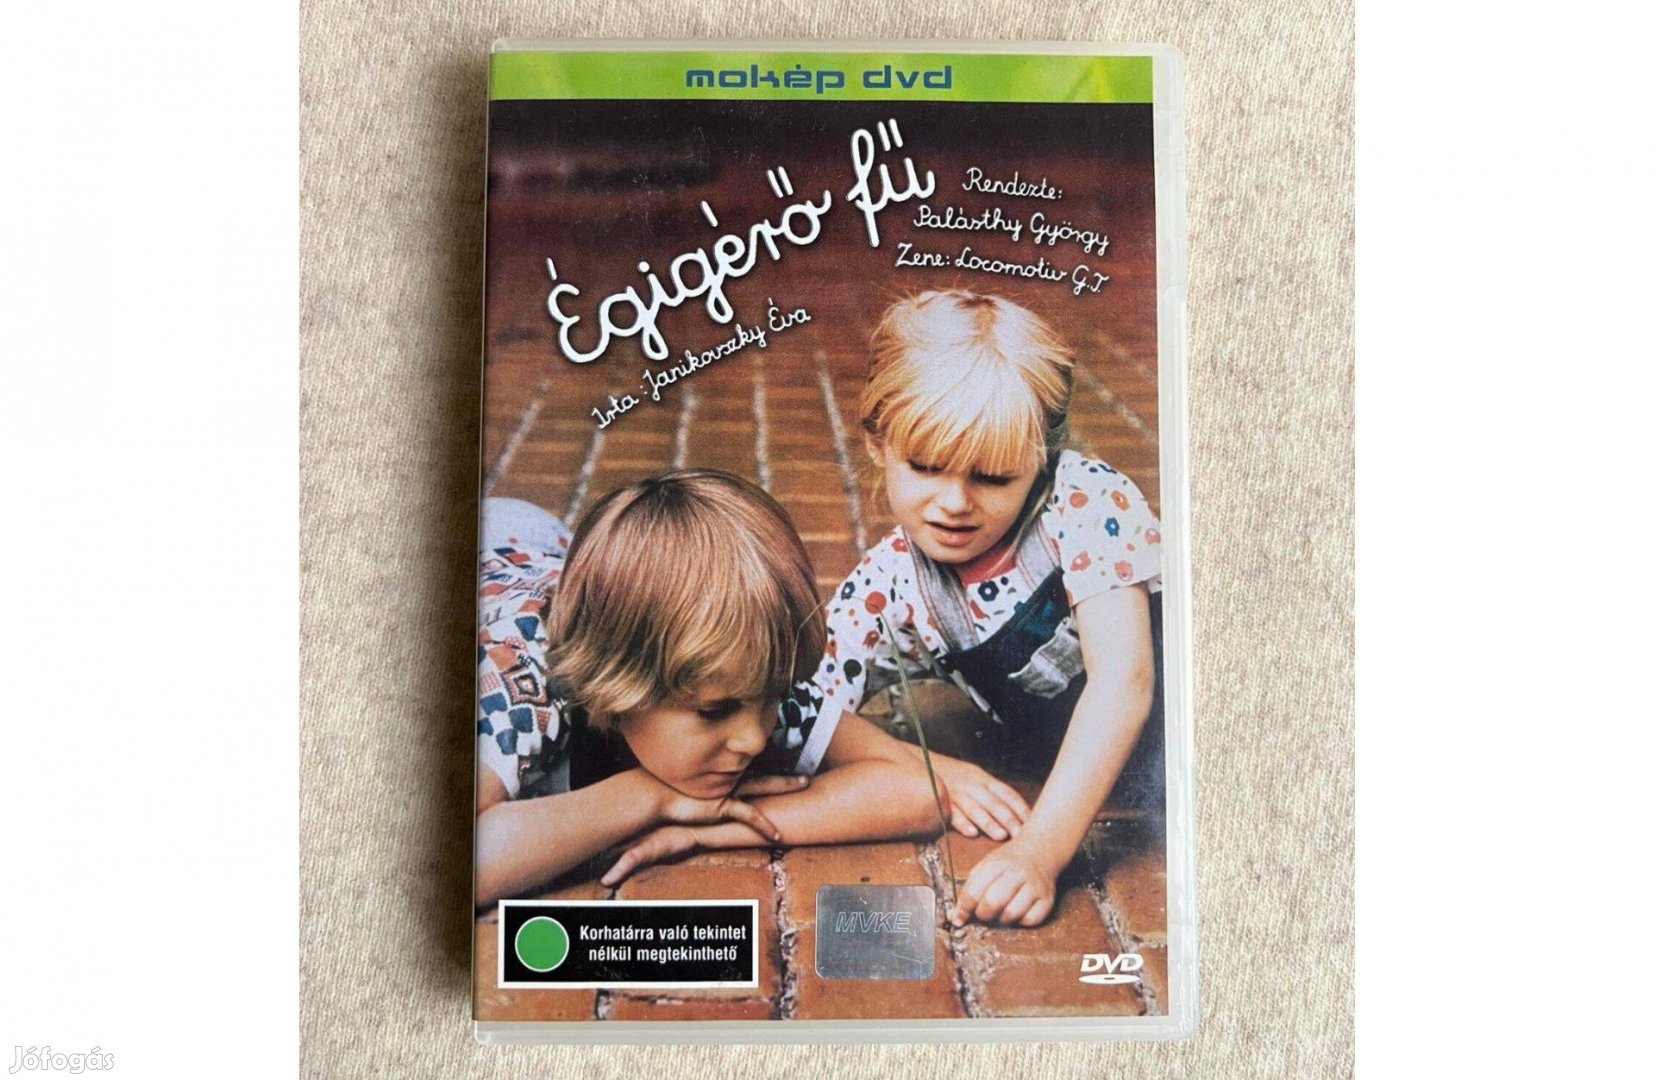 Égígérő fű (DVD)- Ifjúsági, családi film